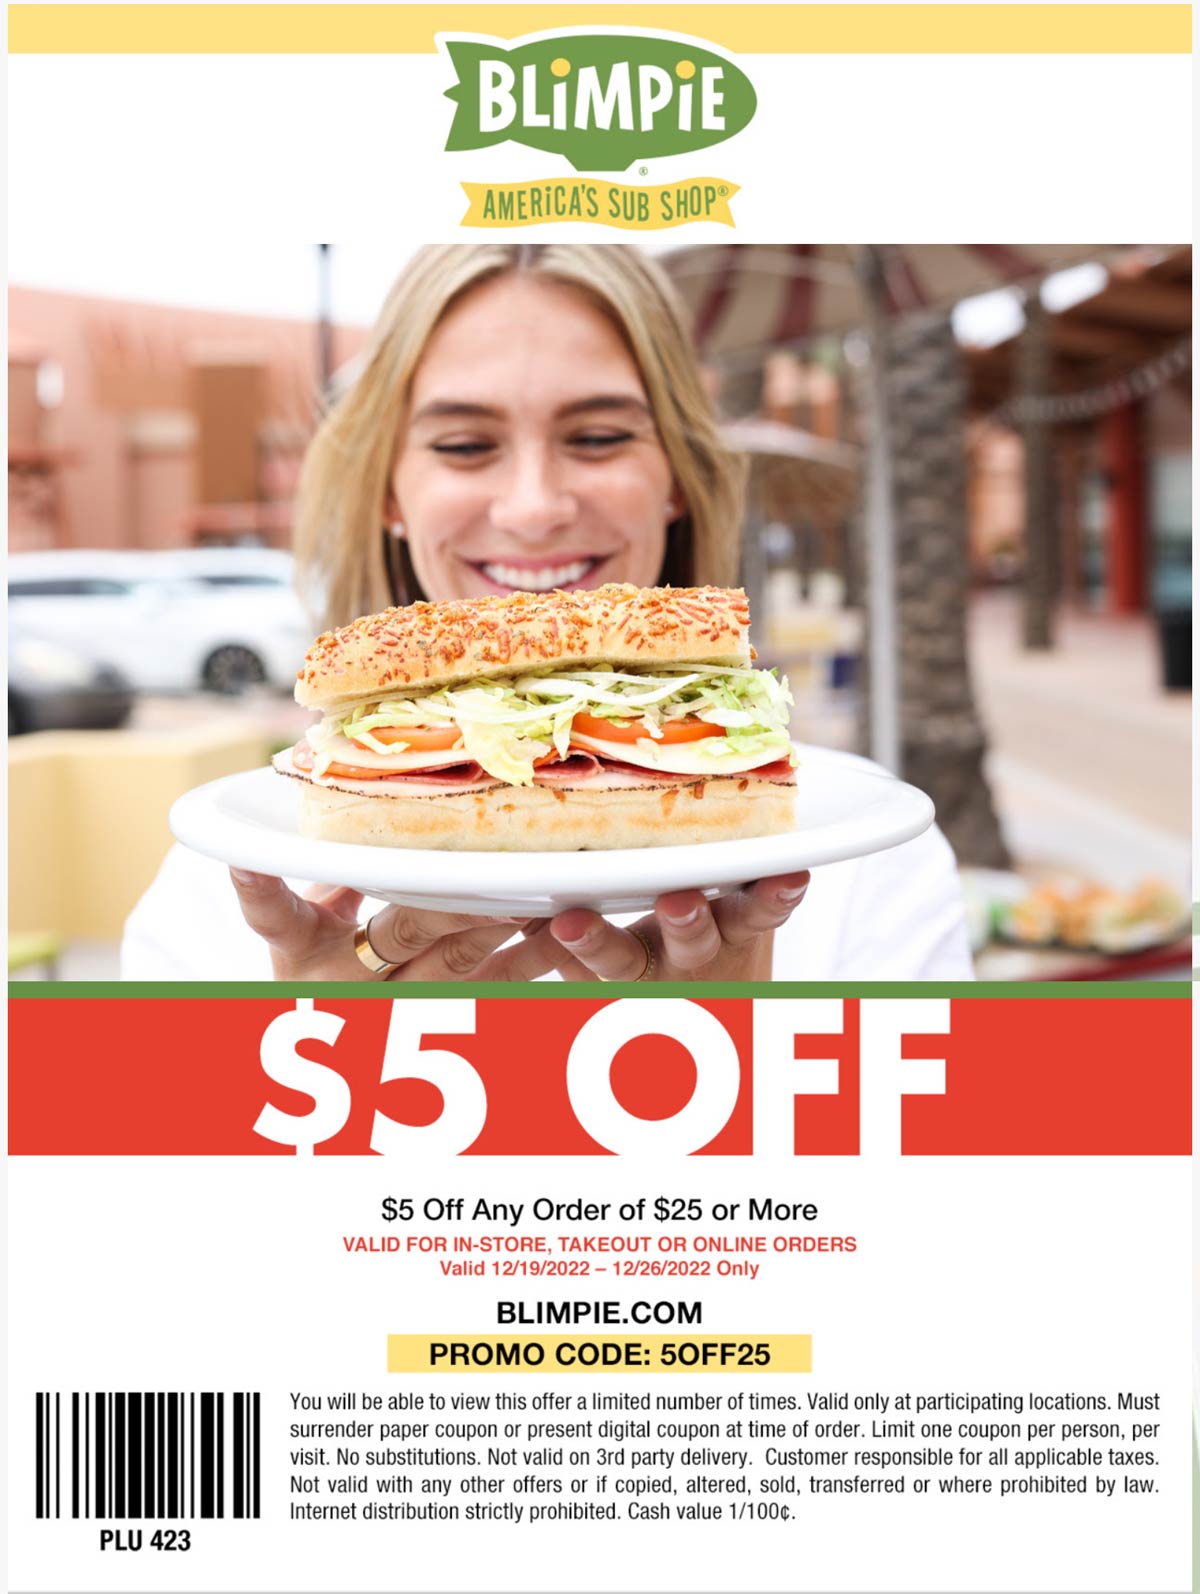 Blimpie restaurants Coupon  $5 off $25 at Blimpie sandwich shops, or online via promo code 5OFF25 #blimpie 